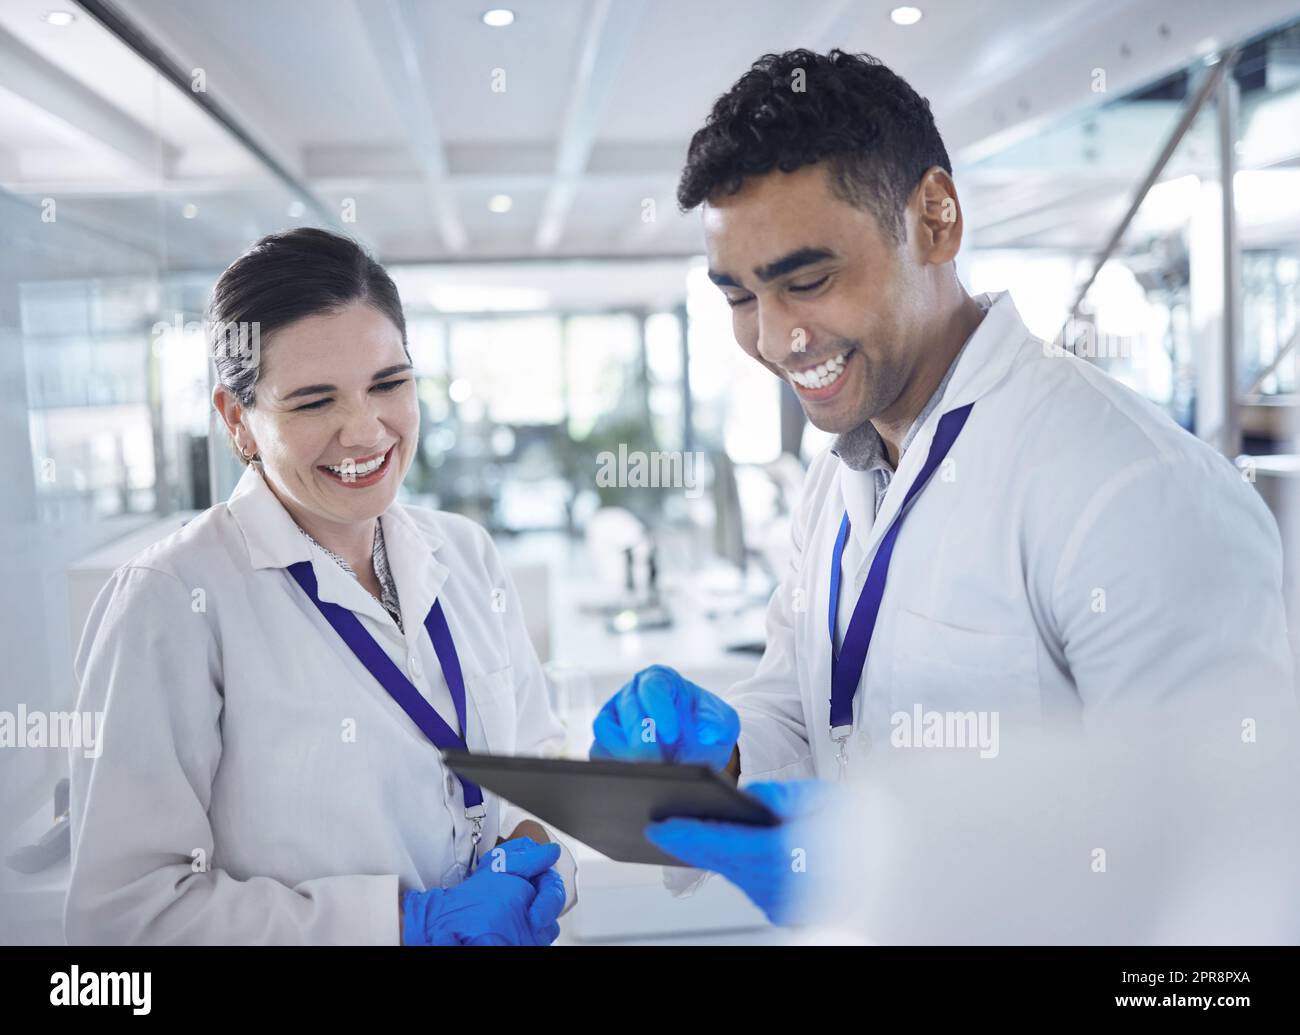 Zwei glückliche und fröhliche Wissenschaftler, die lachen und ein digitales Tablet verwenden, während sie in einem Labor zusammenarbeiten. Gemischter Rassenmensch und weiße Frau, die soziale Medien überprüft und zusammen lächelt. Stockfoto